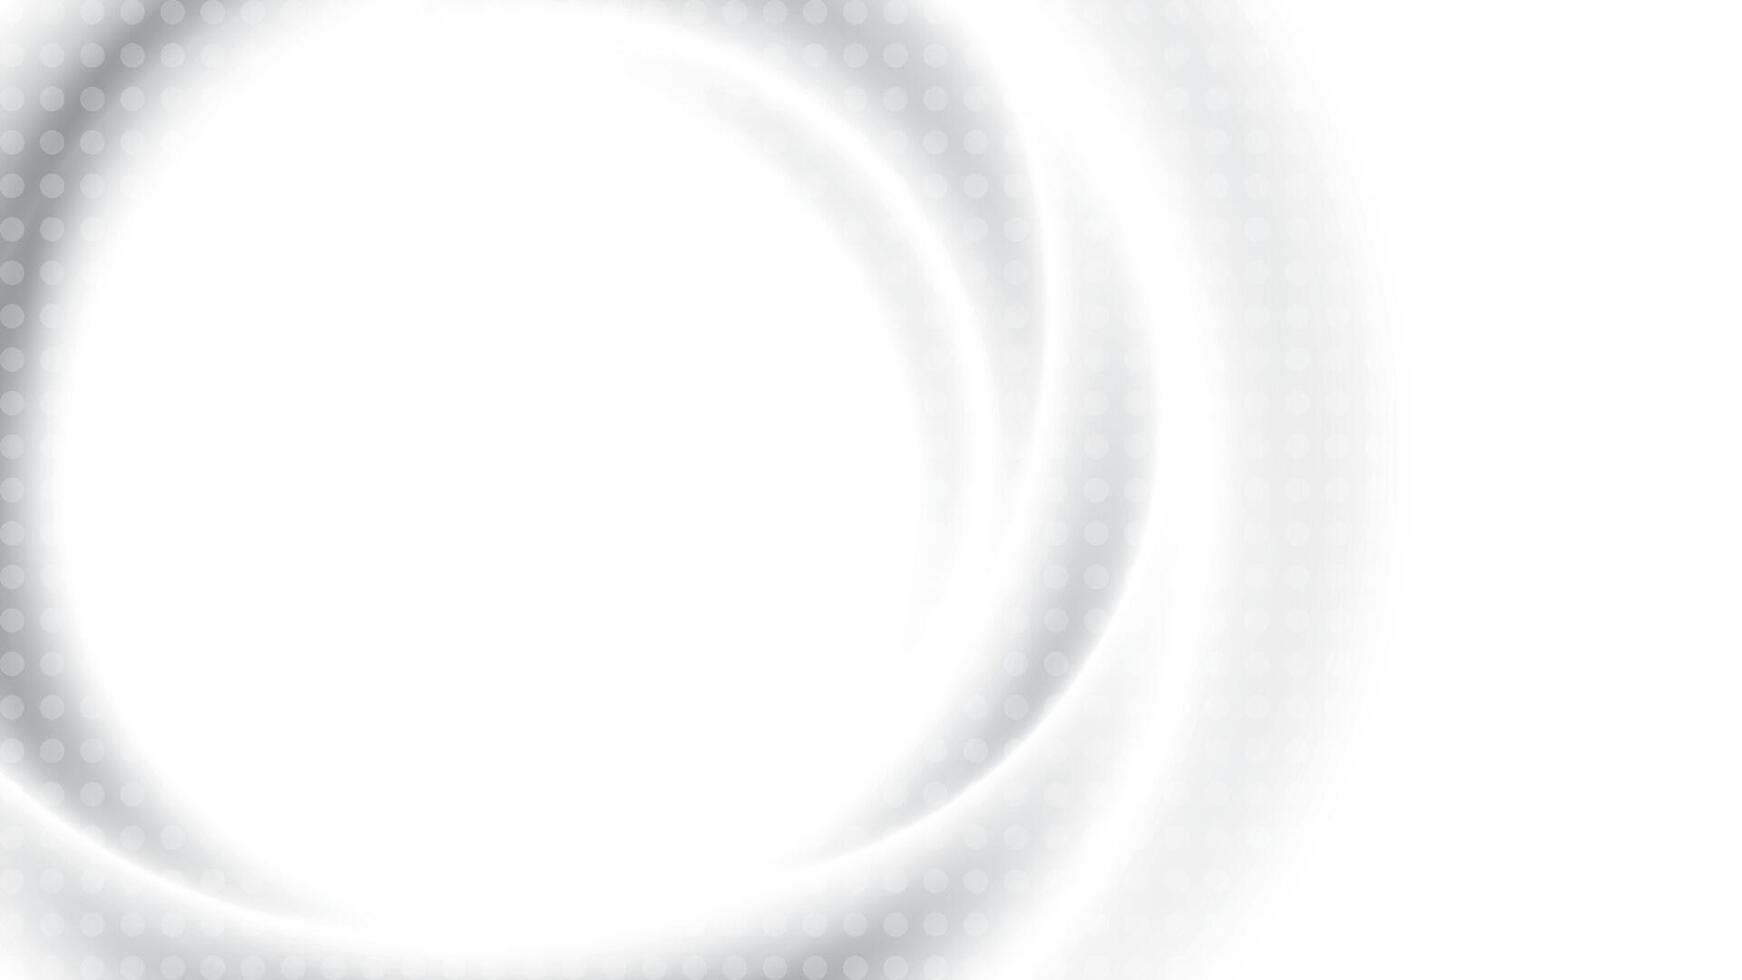 abstrakt Weiß und grau Farbe, modern Design Streifen Hintergrund mit geometrisch runden Form, Halbton Wirkung. Vektor Illustration.